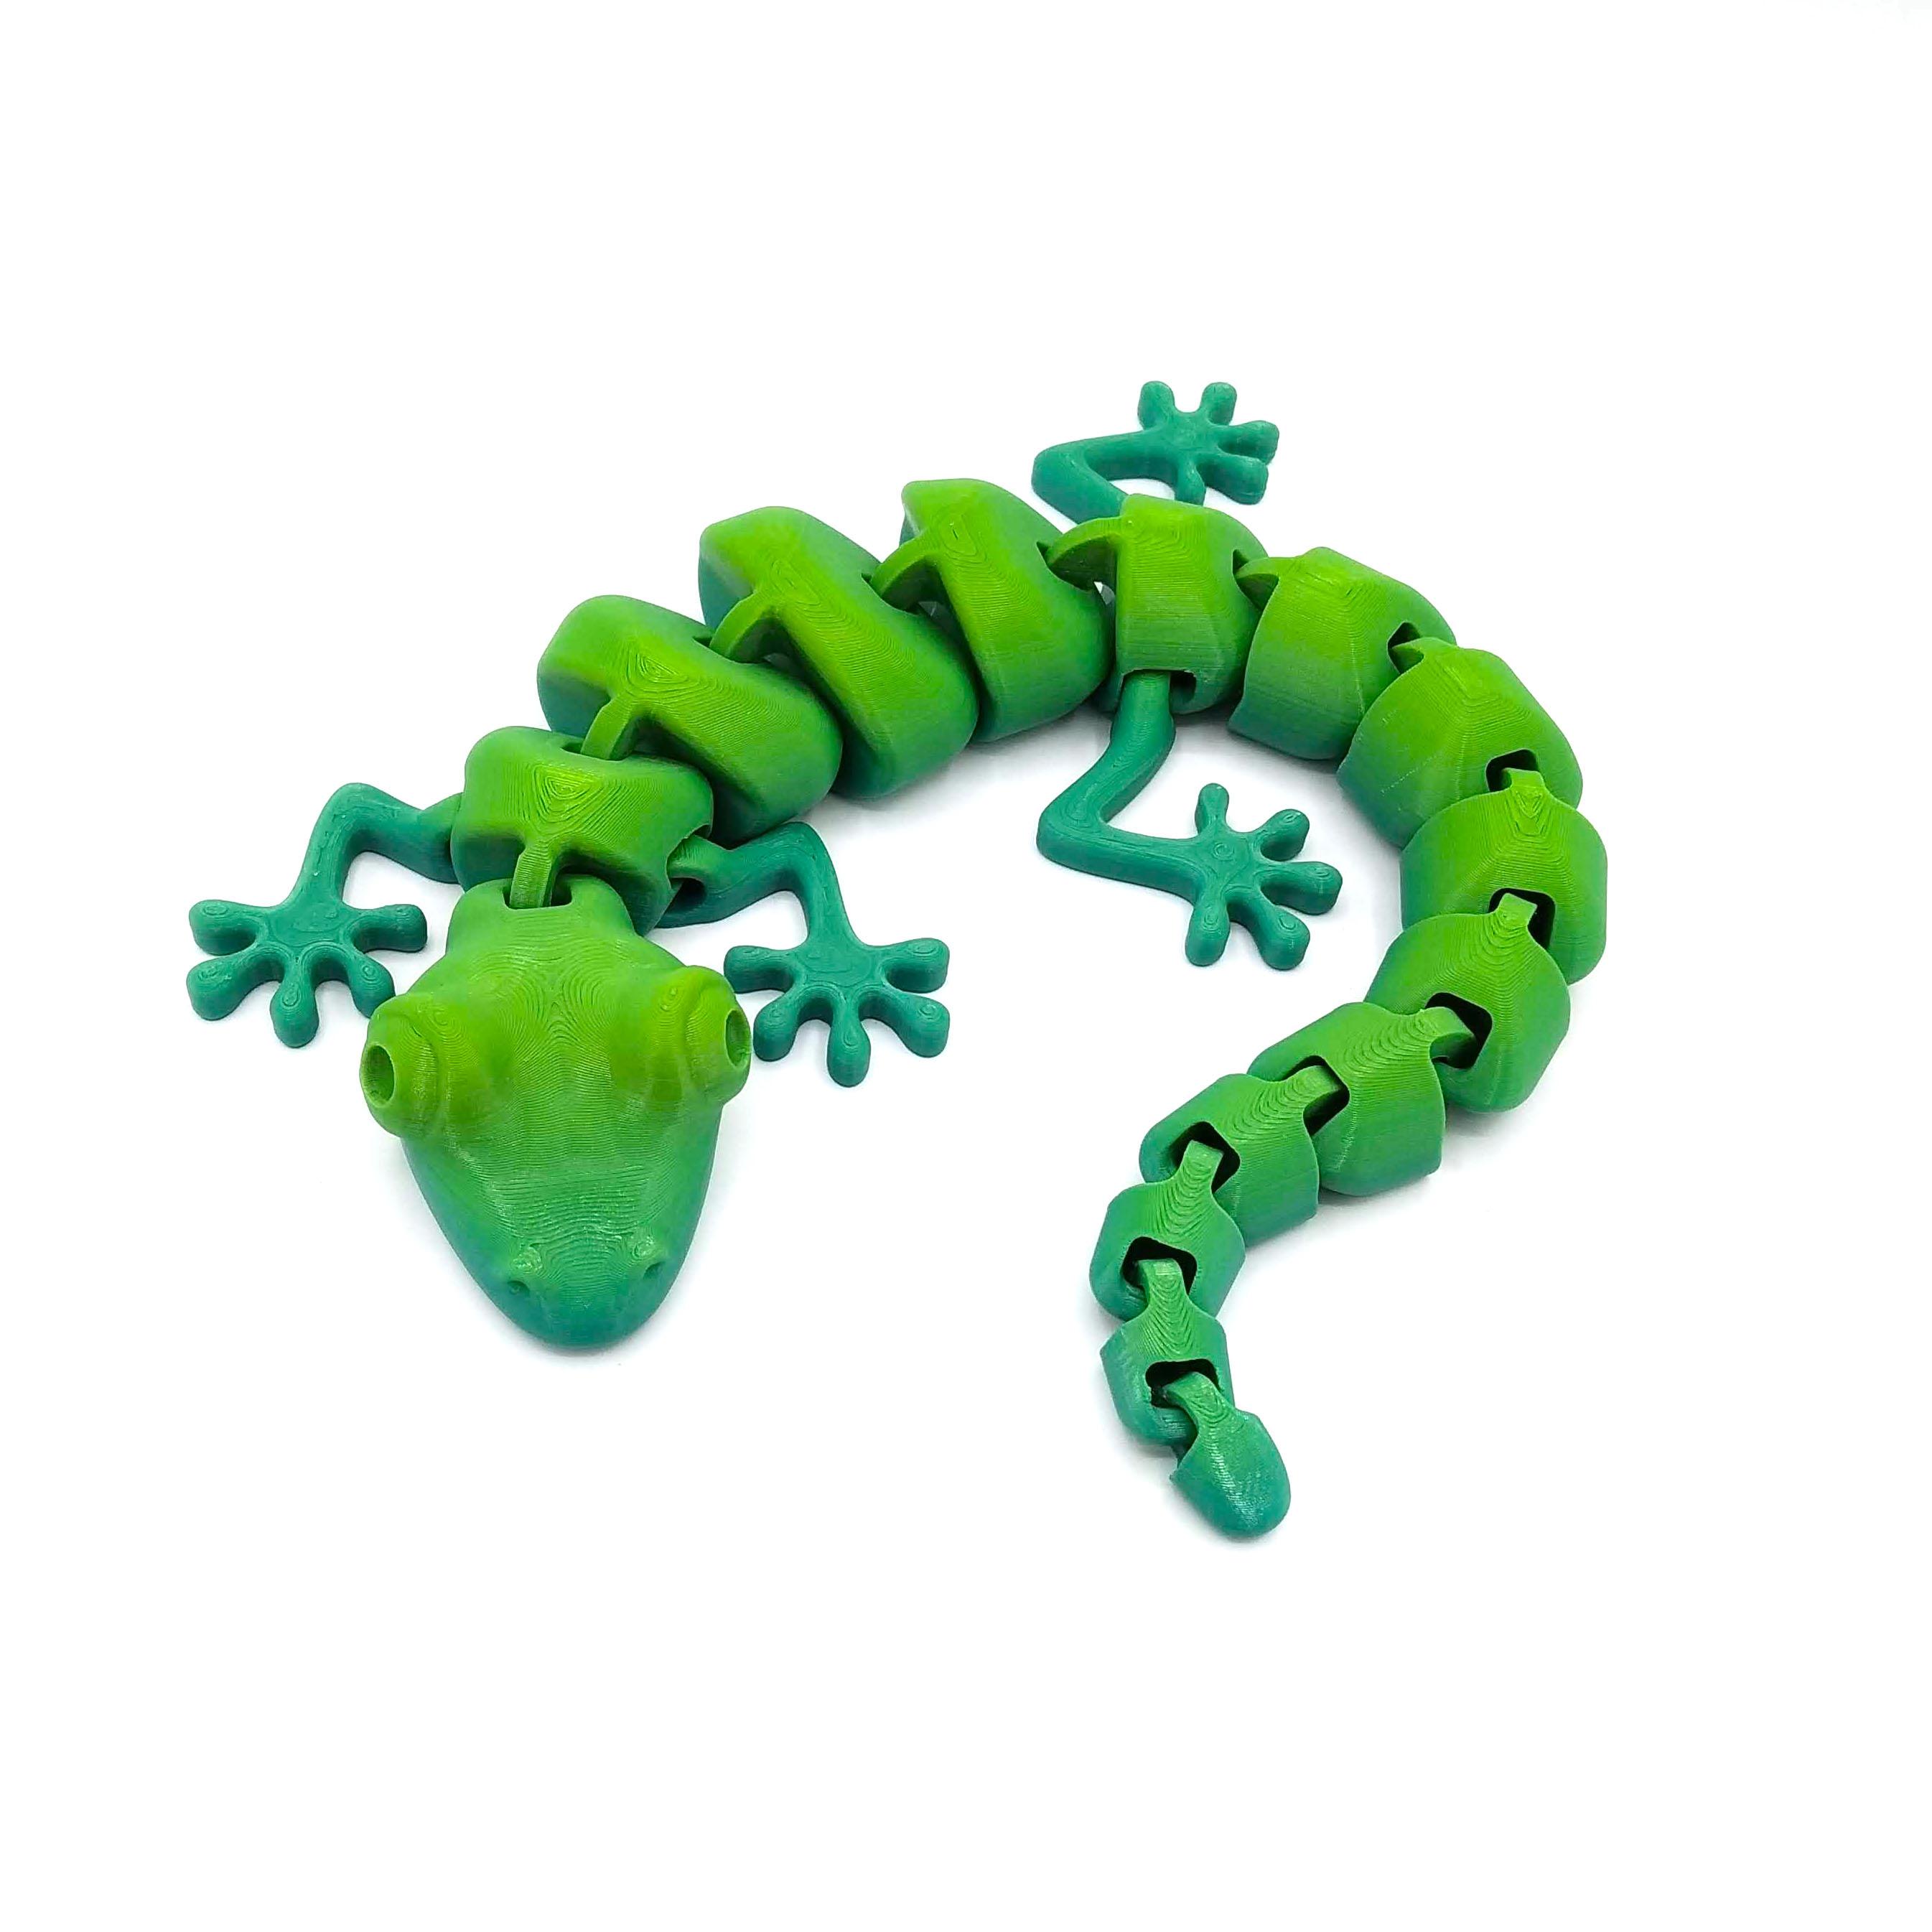 Articulated Lizard v2 3d model